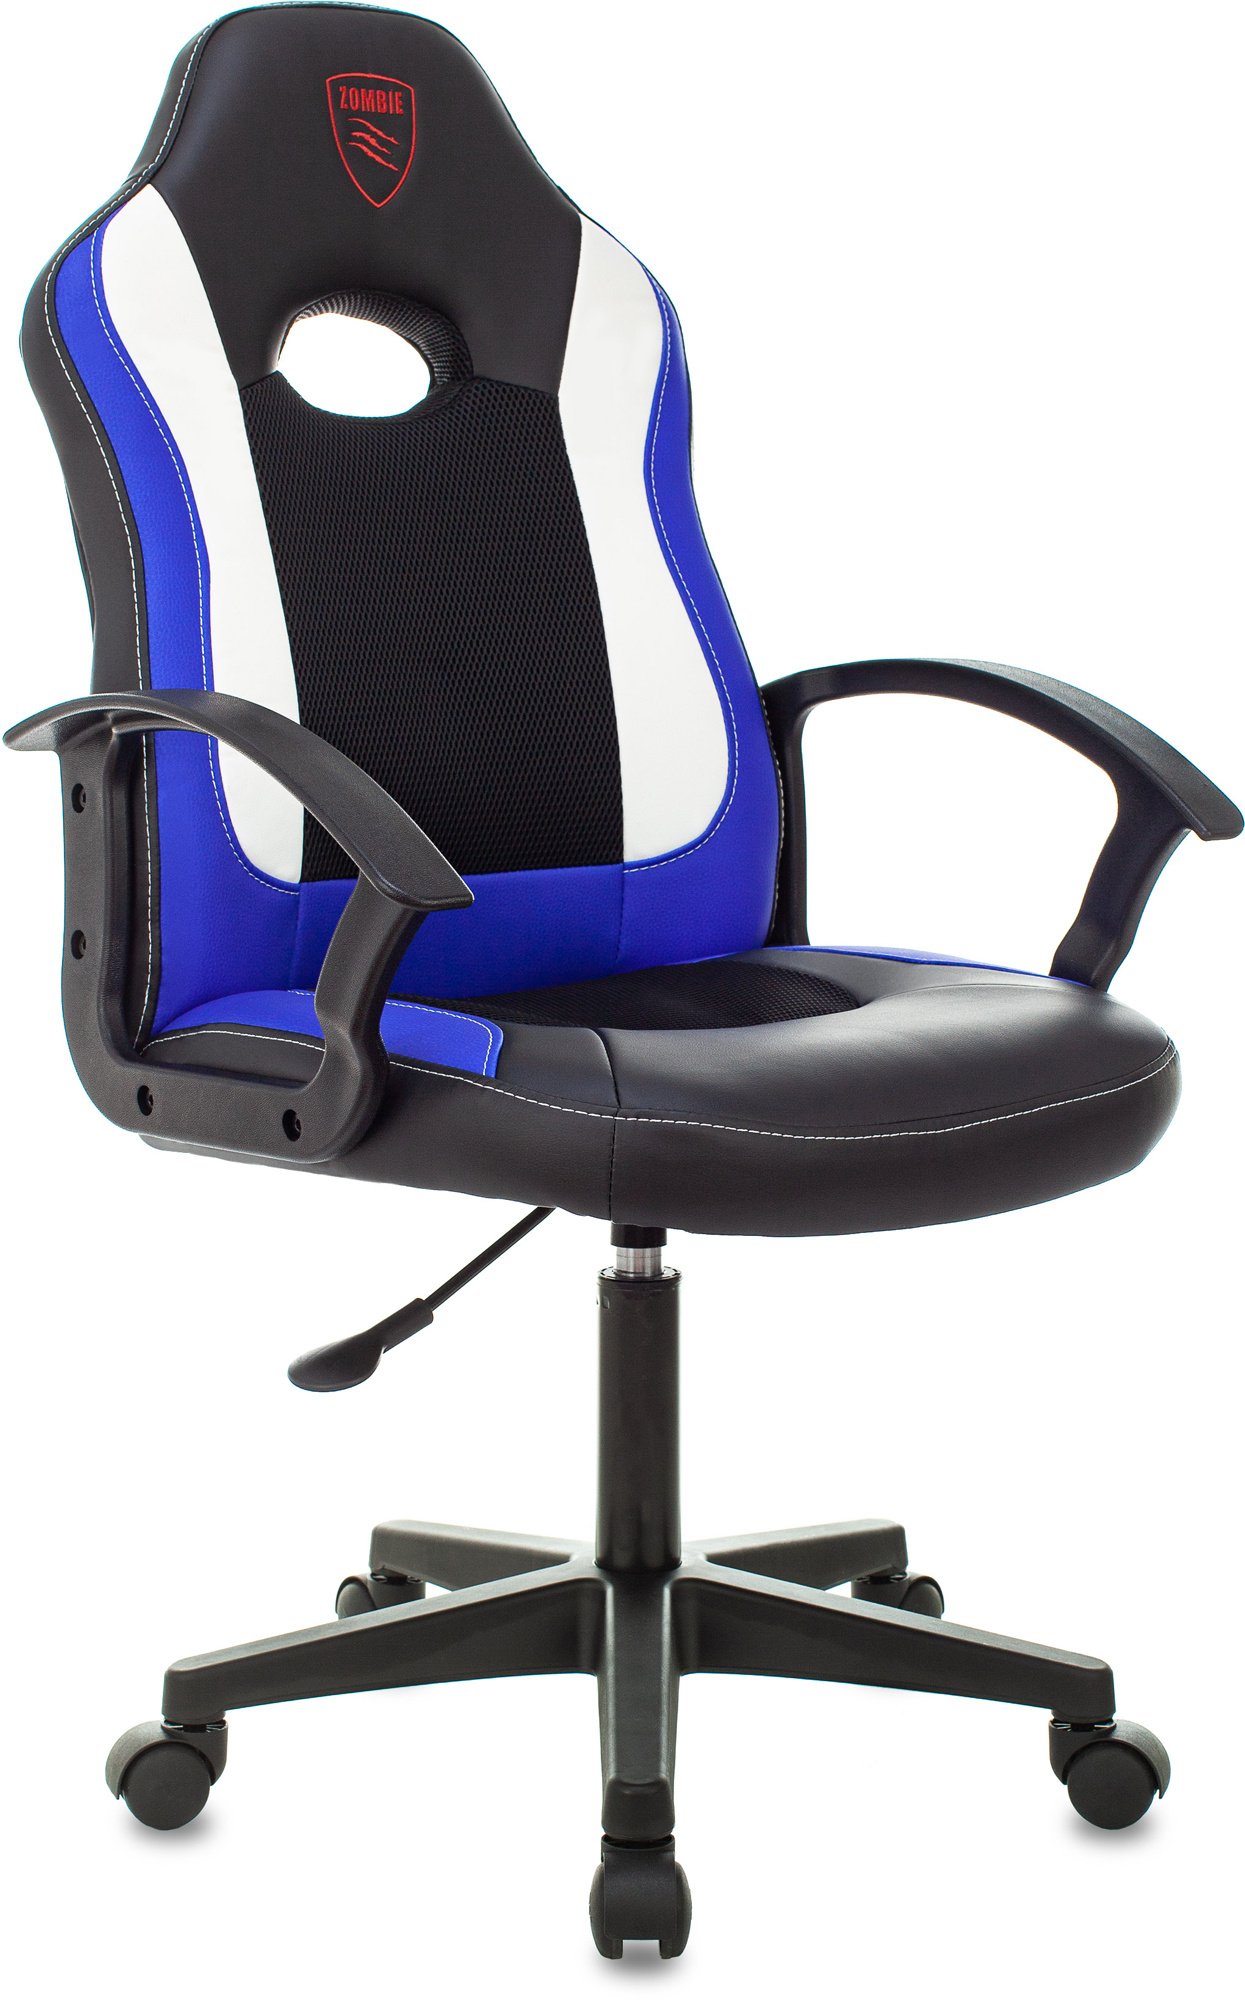 Кресло игровое Бюрократ ZOMBIE 11LT, черный/синий (ZOMBIE 11LT BLUE)